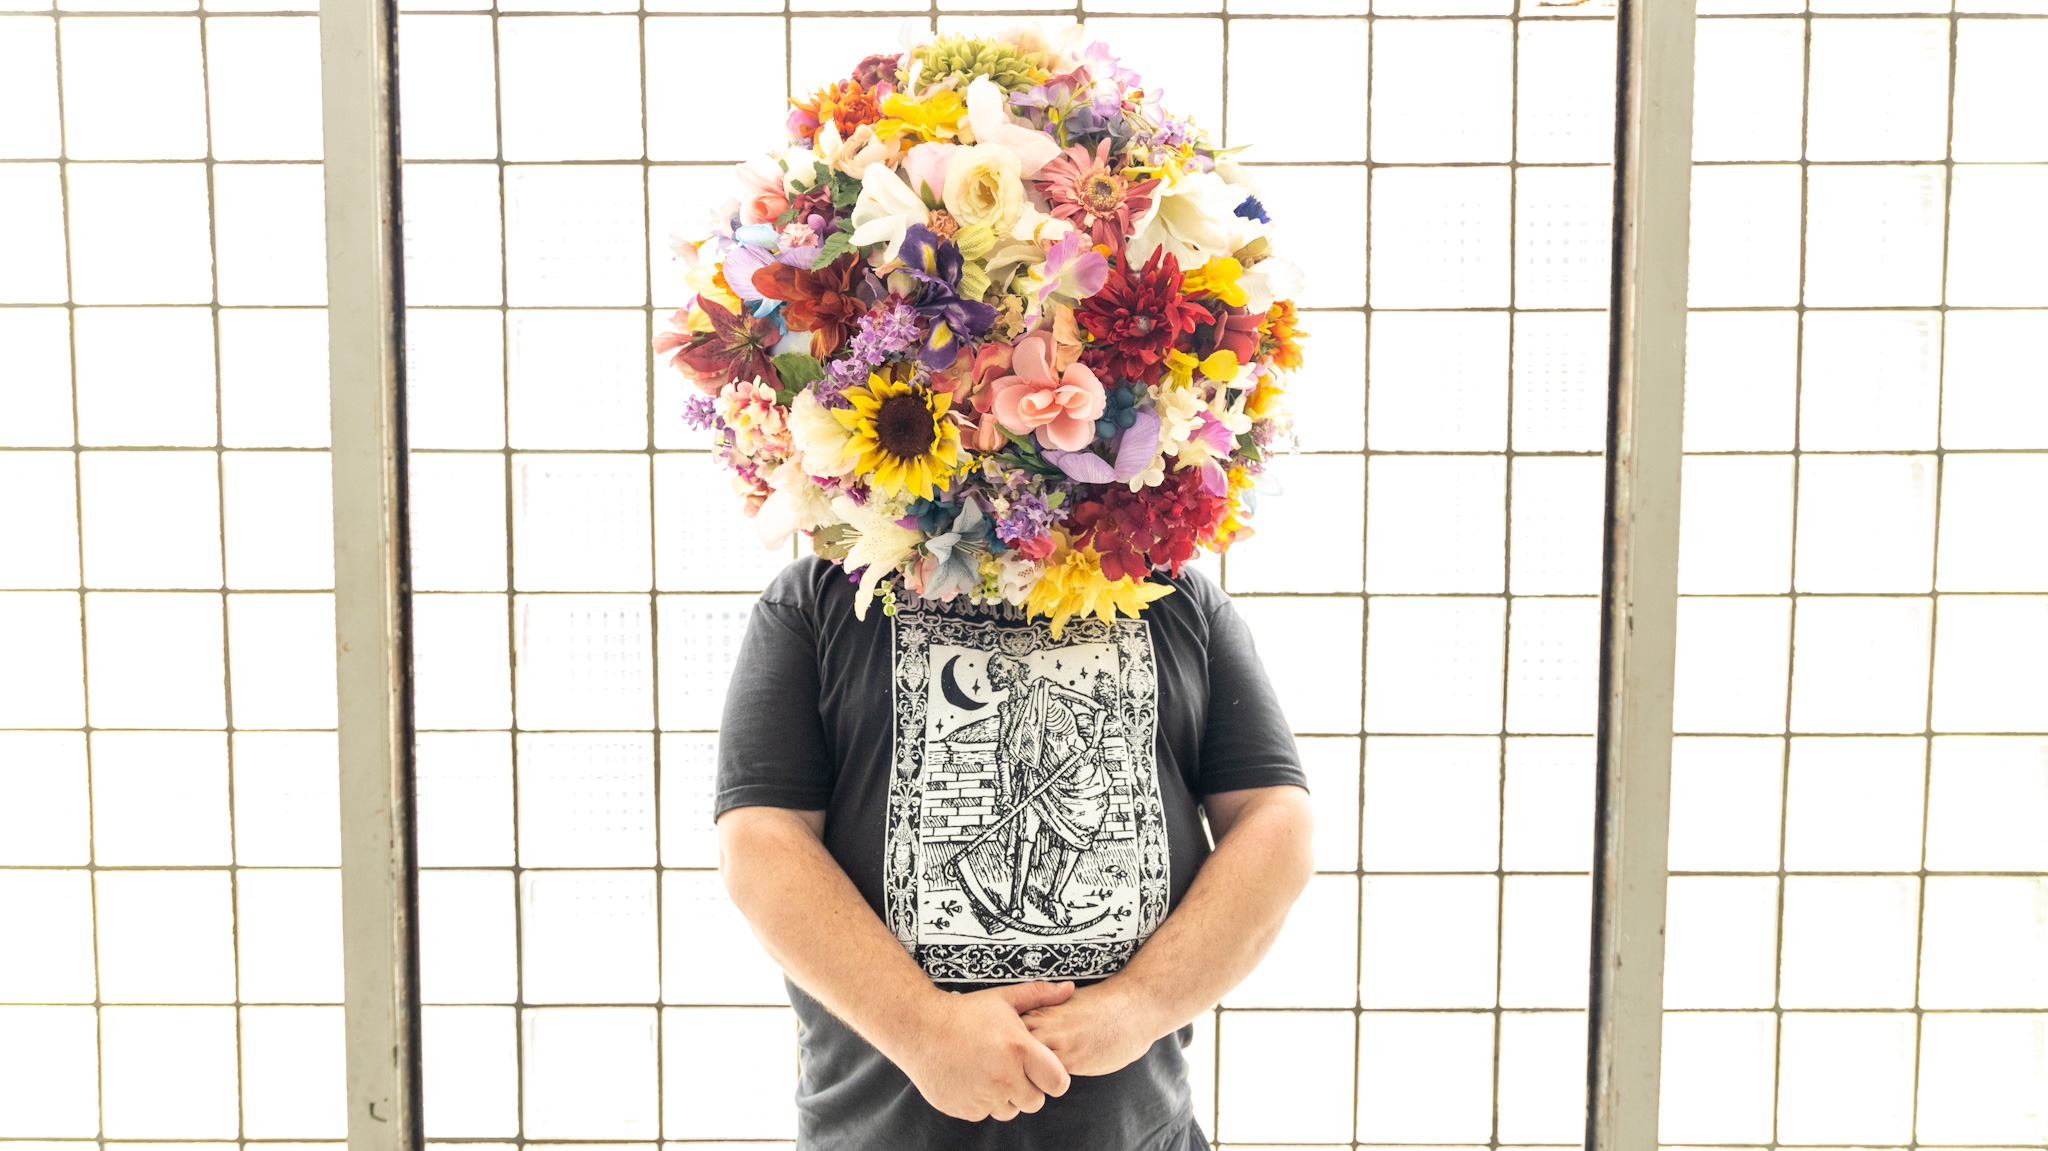 WDET host Ryan Patrick Hooper wearing a flower headdress created by artist Lisa Waud.